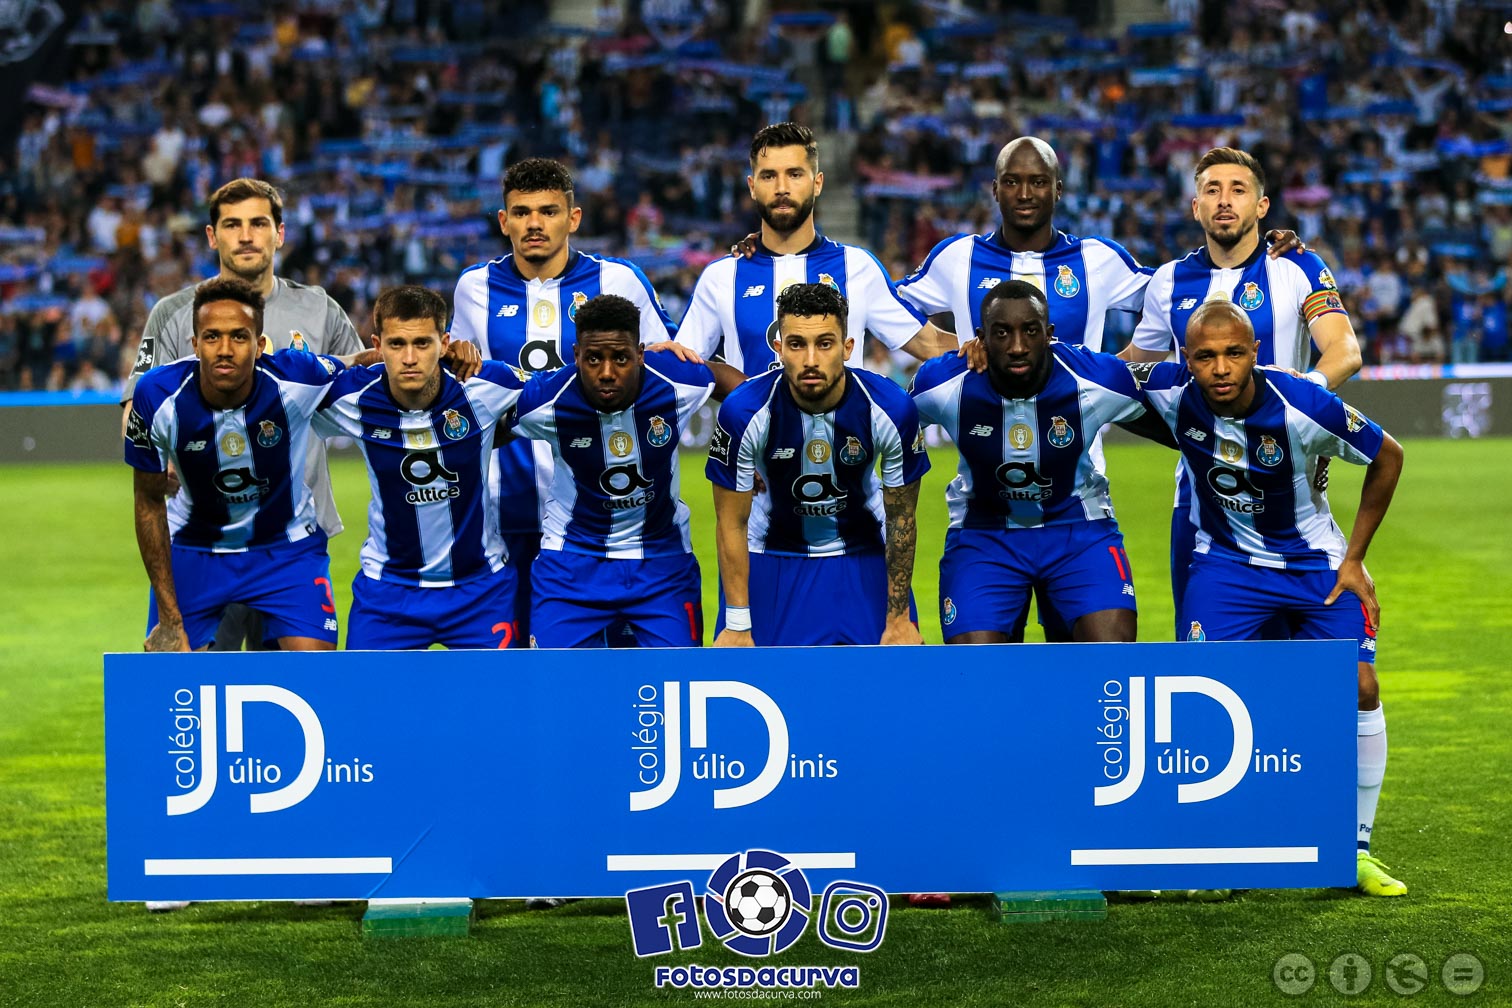 Presenças nos quartos da Champions desde 2000: FC Porto mete a